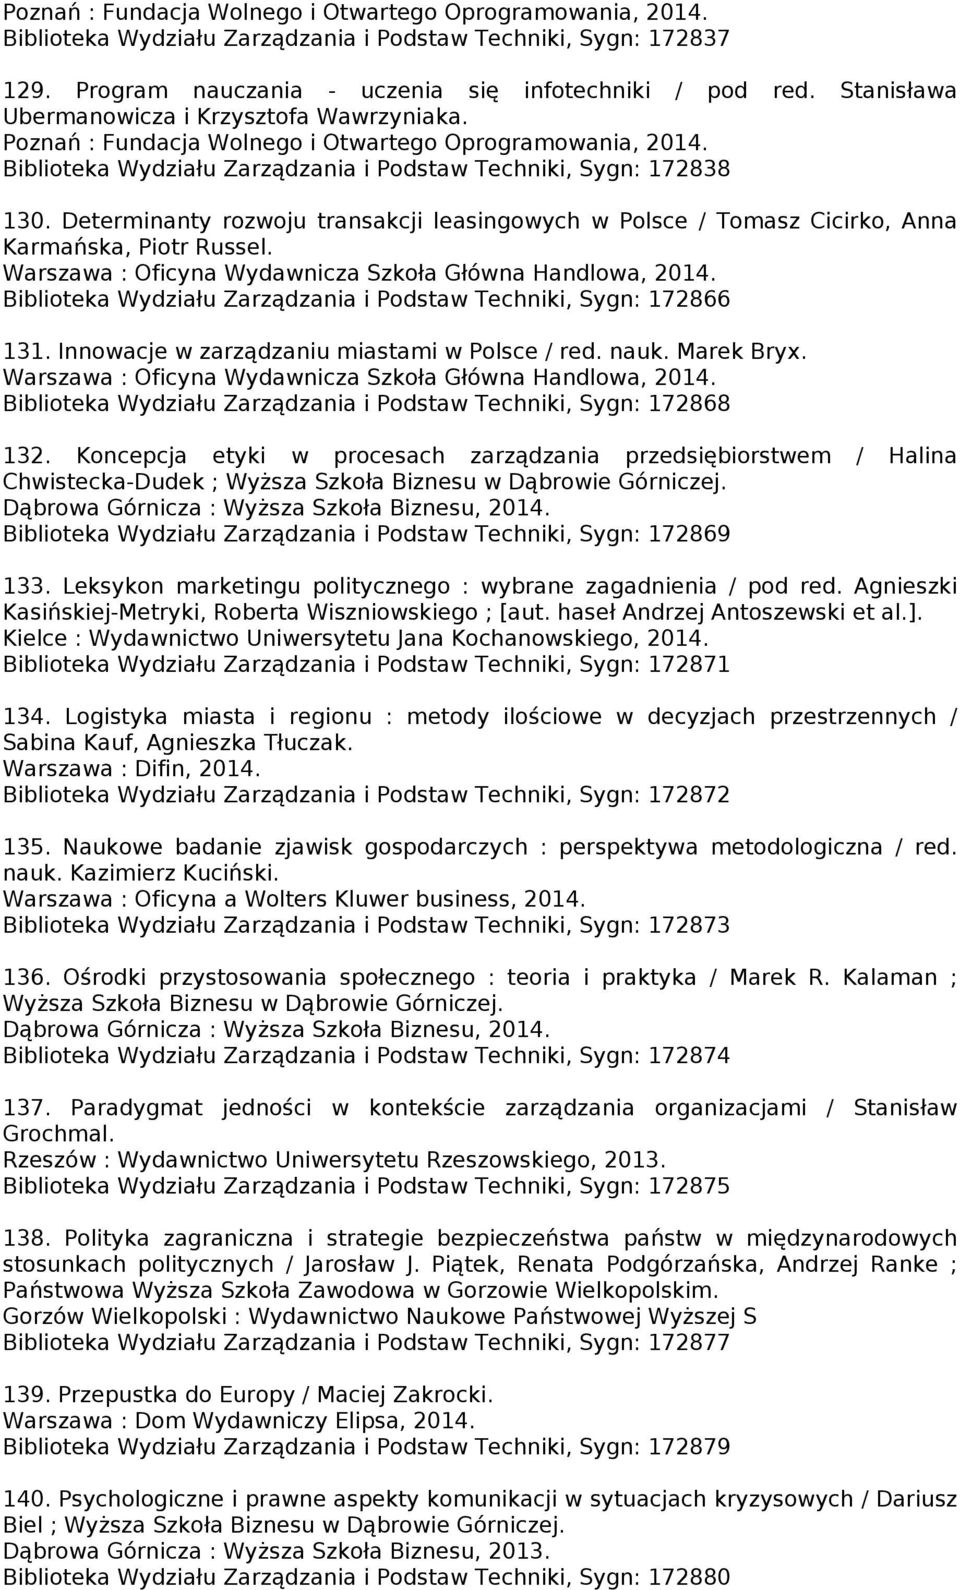 Determinanty rozwoju transakcji leasingowych w Polsce / Tomasz Cicirko, Anna Karmańska, Piotr Russel. Warszawa : Oficyna Wydawnicza Szkoła Główna Handlowa, 2014.